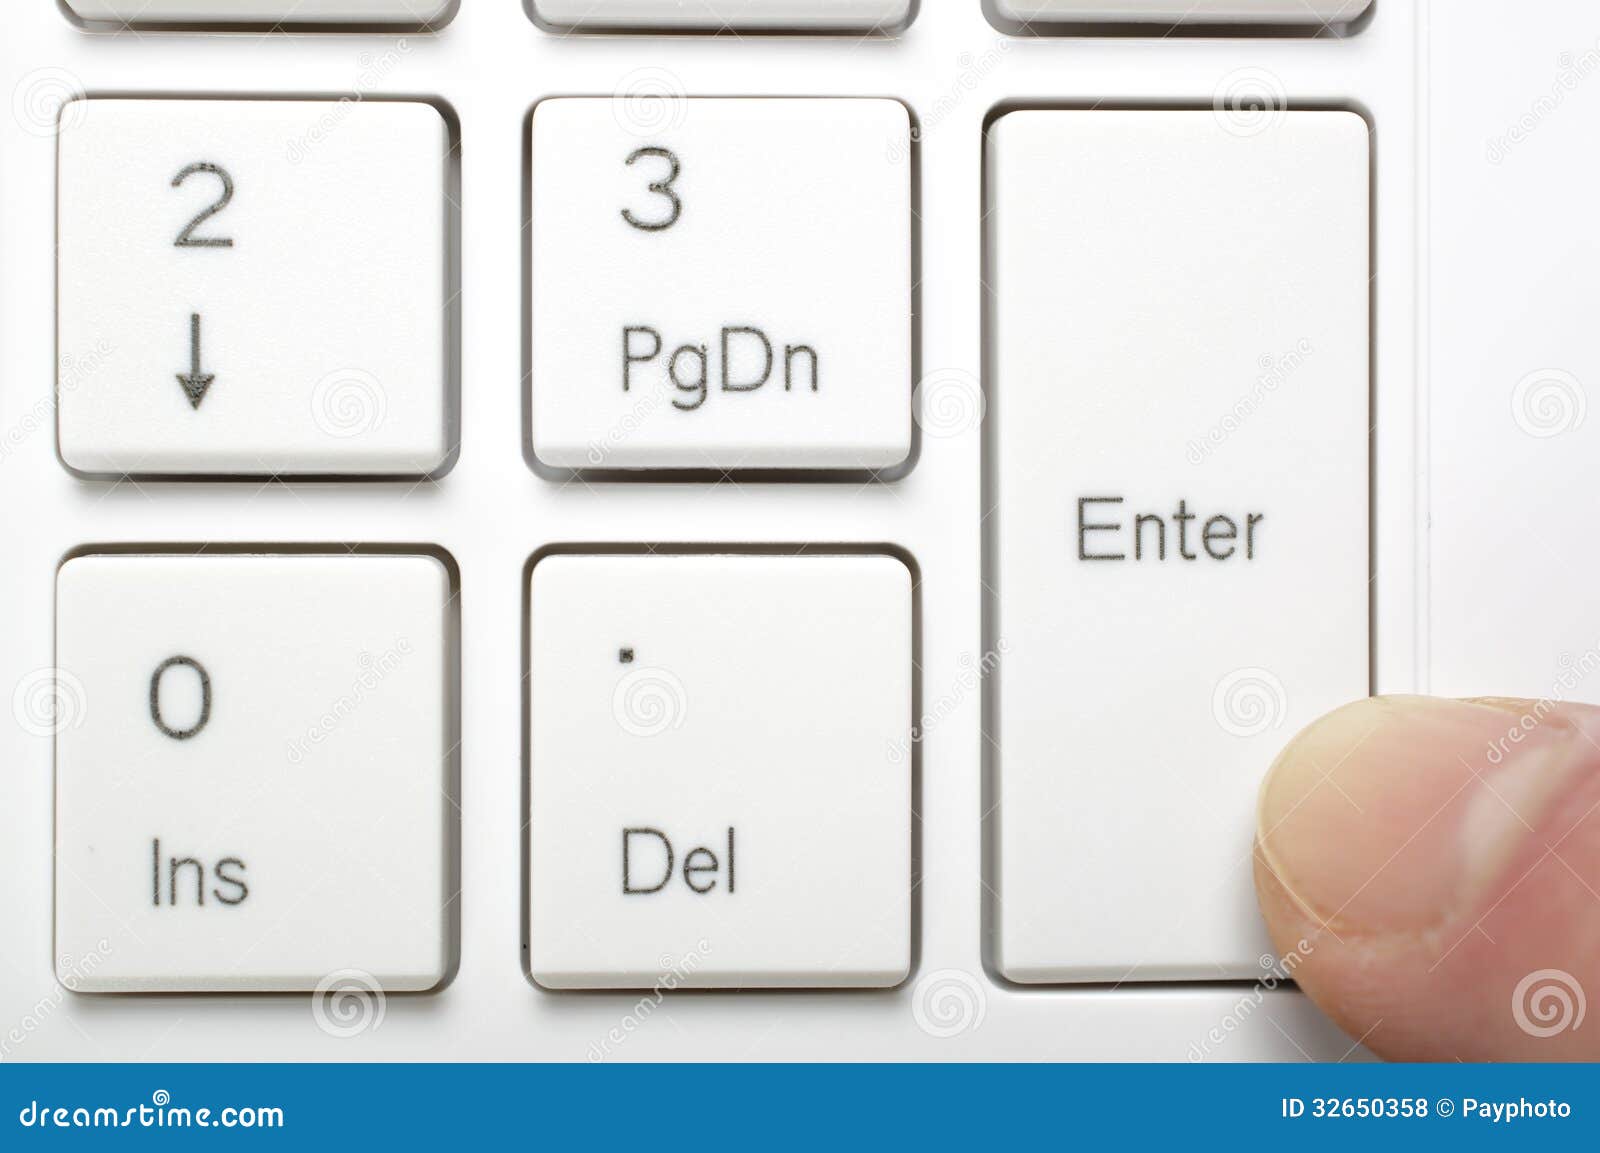 Клавишу введите код. Enter на клавиатуре. Клавиша enter на клавиатуре. Клавиша ентер. Клавиша Энтер на клавиатуре.